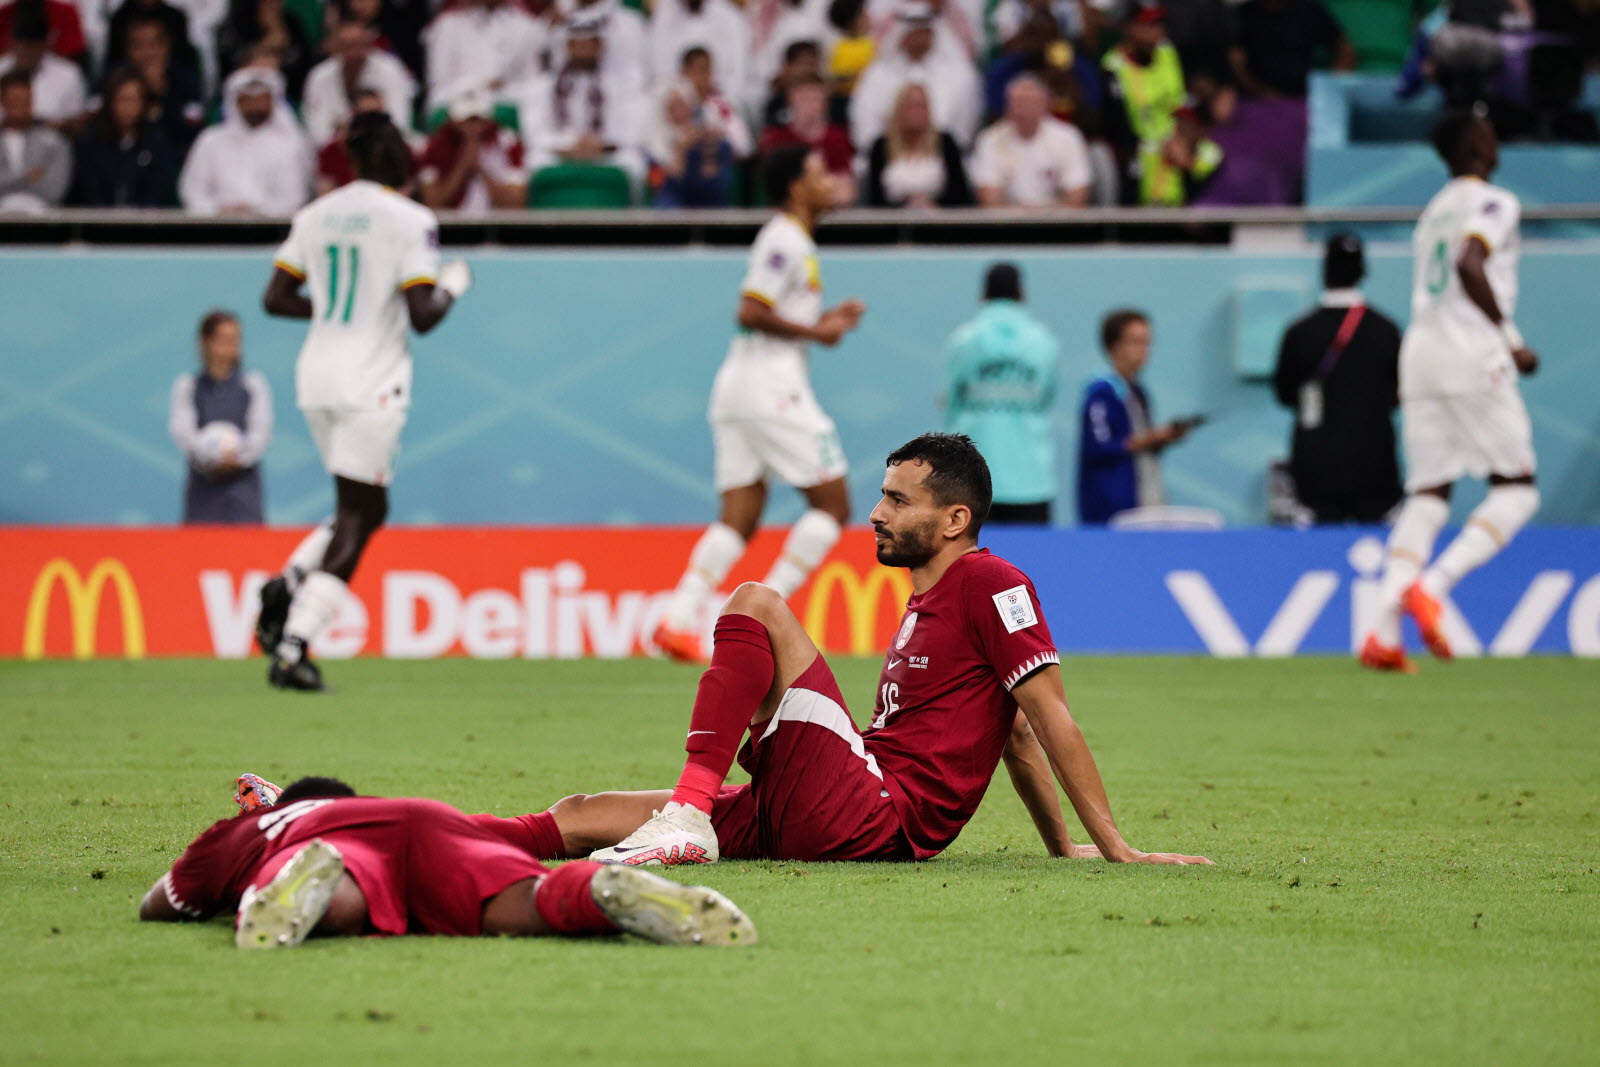 Le Qatar déjà éliminé de son Mondial